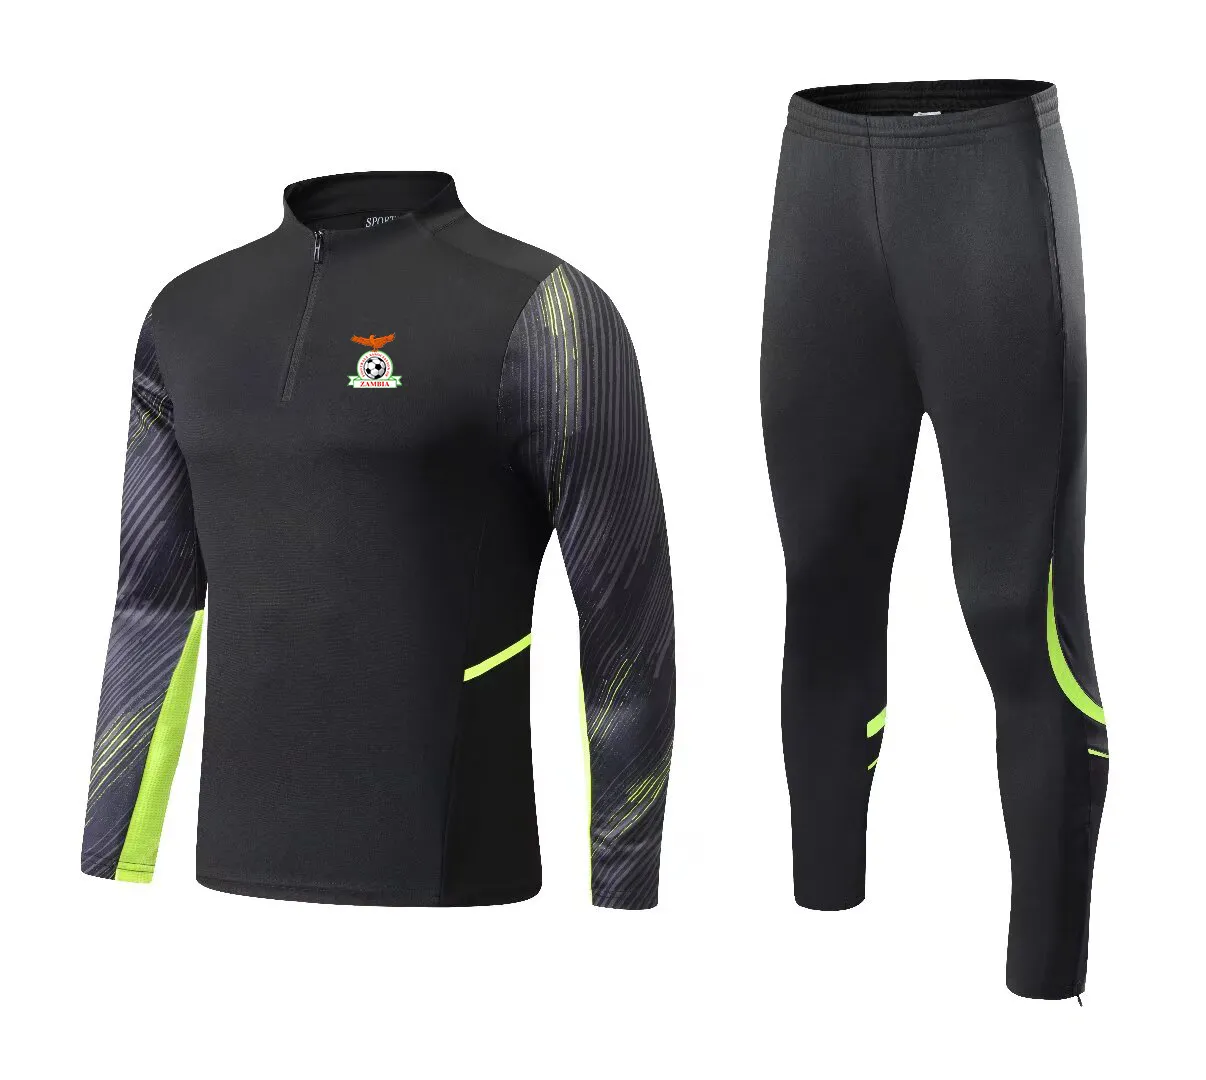 Zâmbia ternos esportivos de lazer masculino e infantil ao ar livre de mangas compridas semi-zíper roupas de treinamento esportes casaco casual tamanho 4XS-2XL